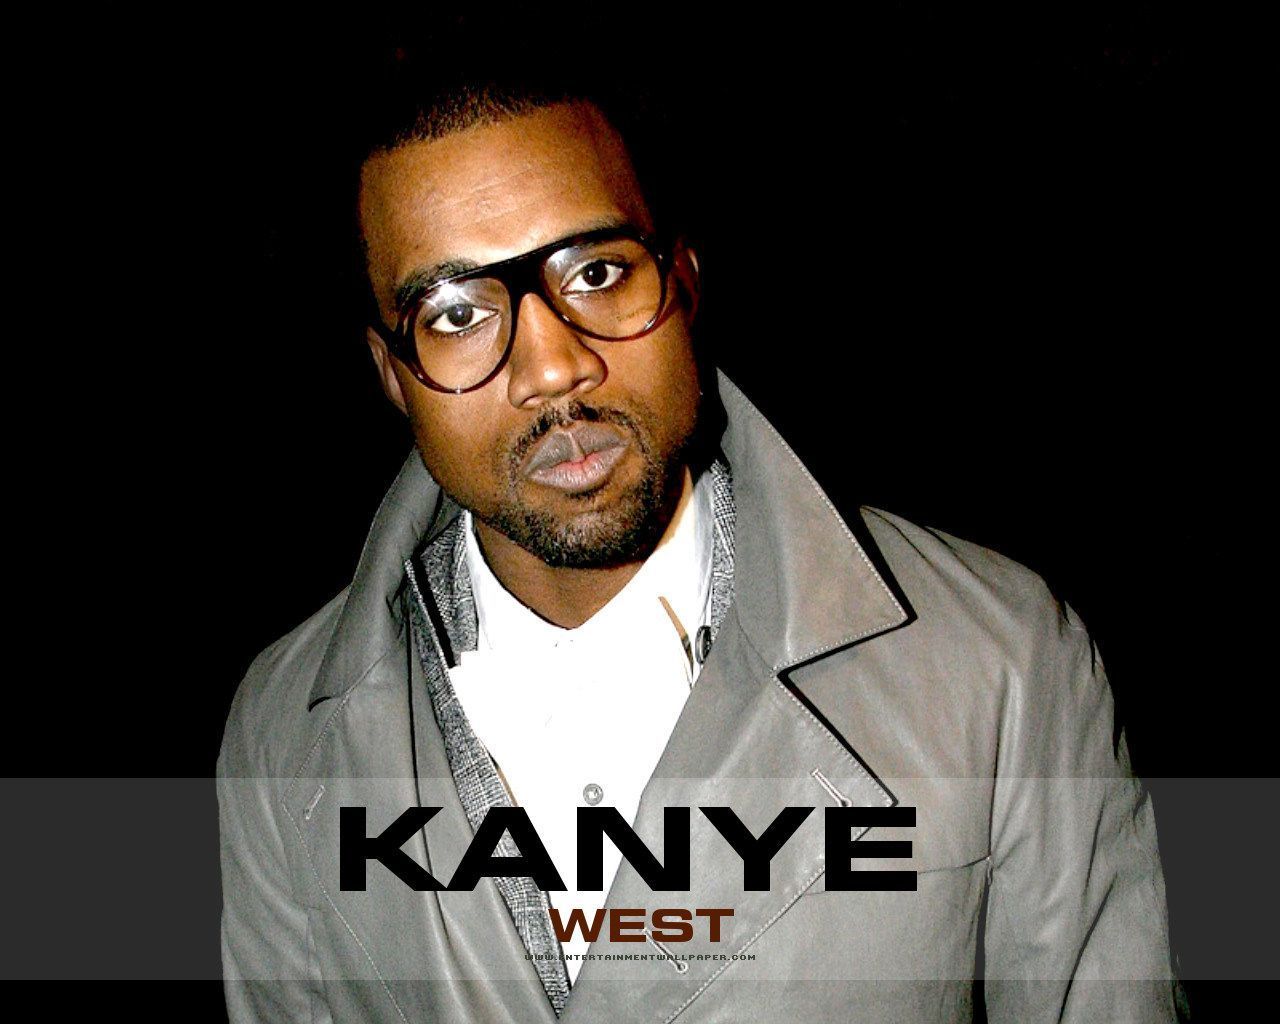 Kanye West Wallpaper - #40016030 (1280x1024) | Desktop Download ...